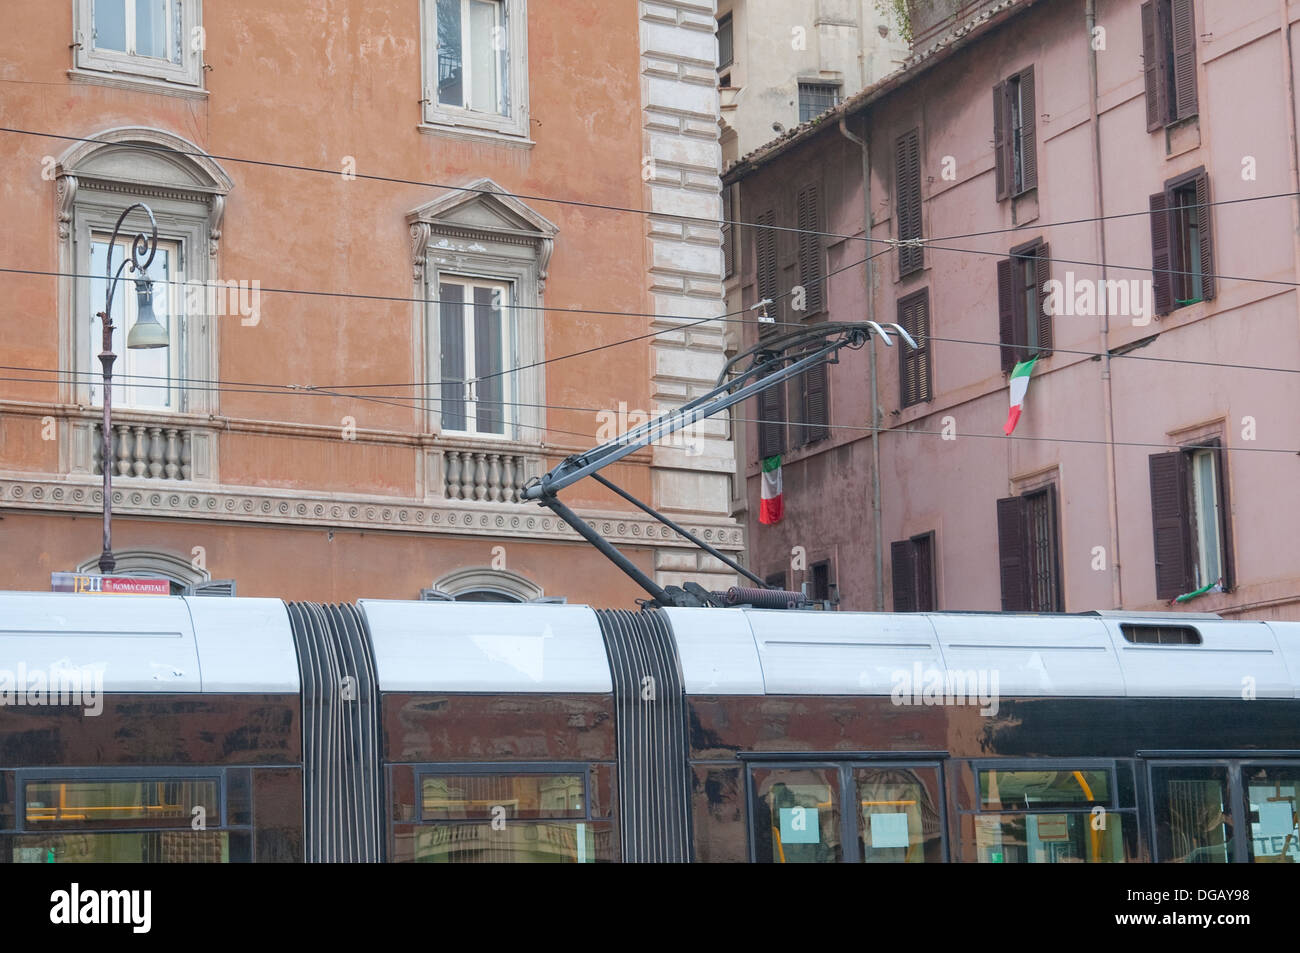 Street scene in Rome Italy Stock Photo